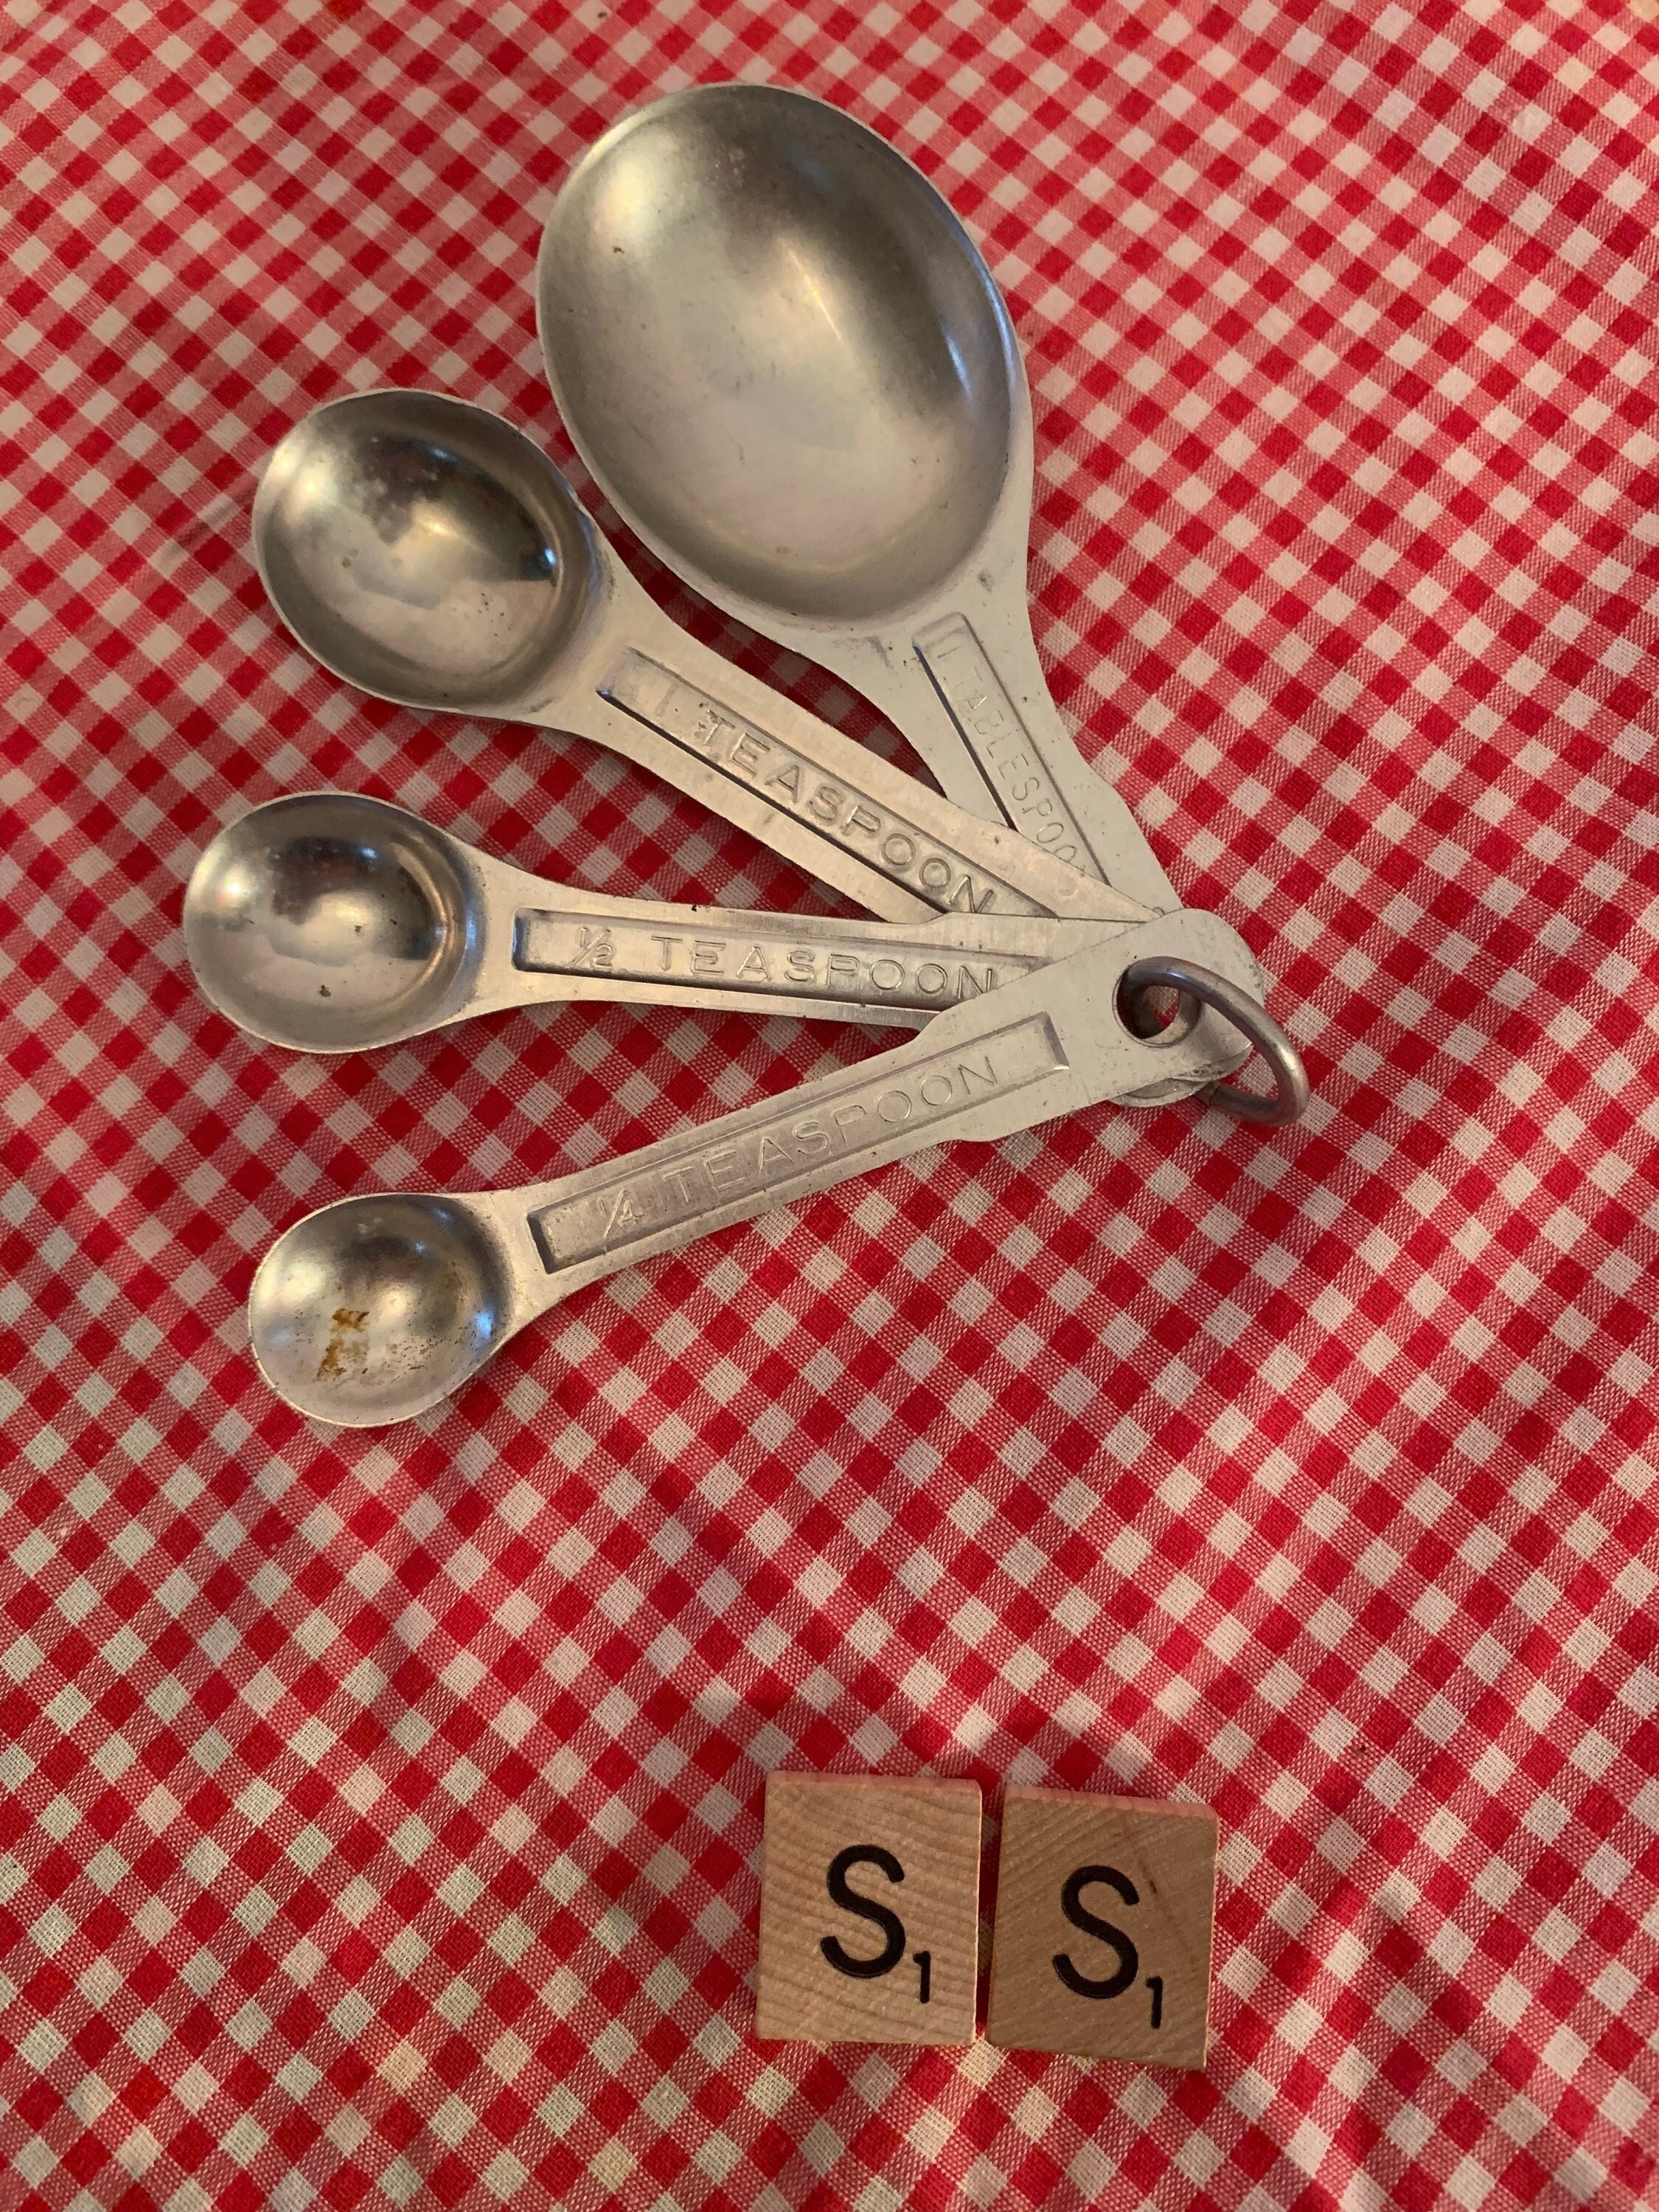 VINTAGE Aluminum Measuring Spoon Set - Tablespoon Teaspoon 1/2 1/4 B49